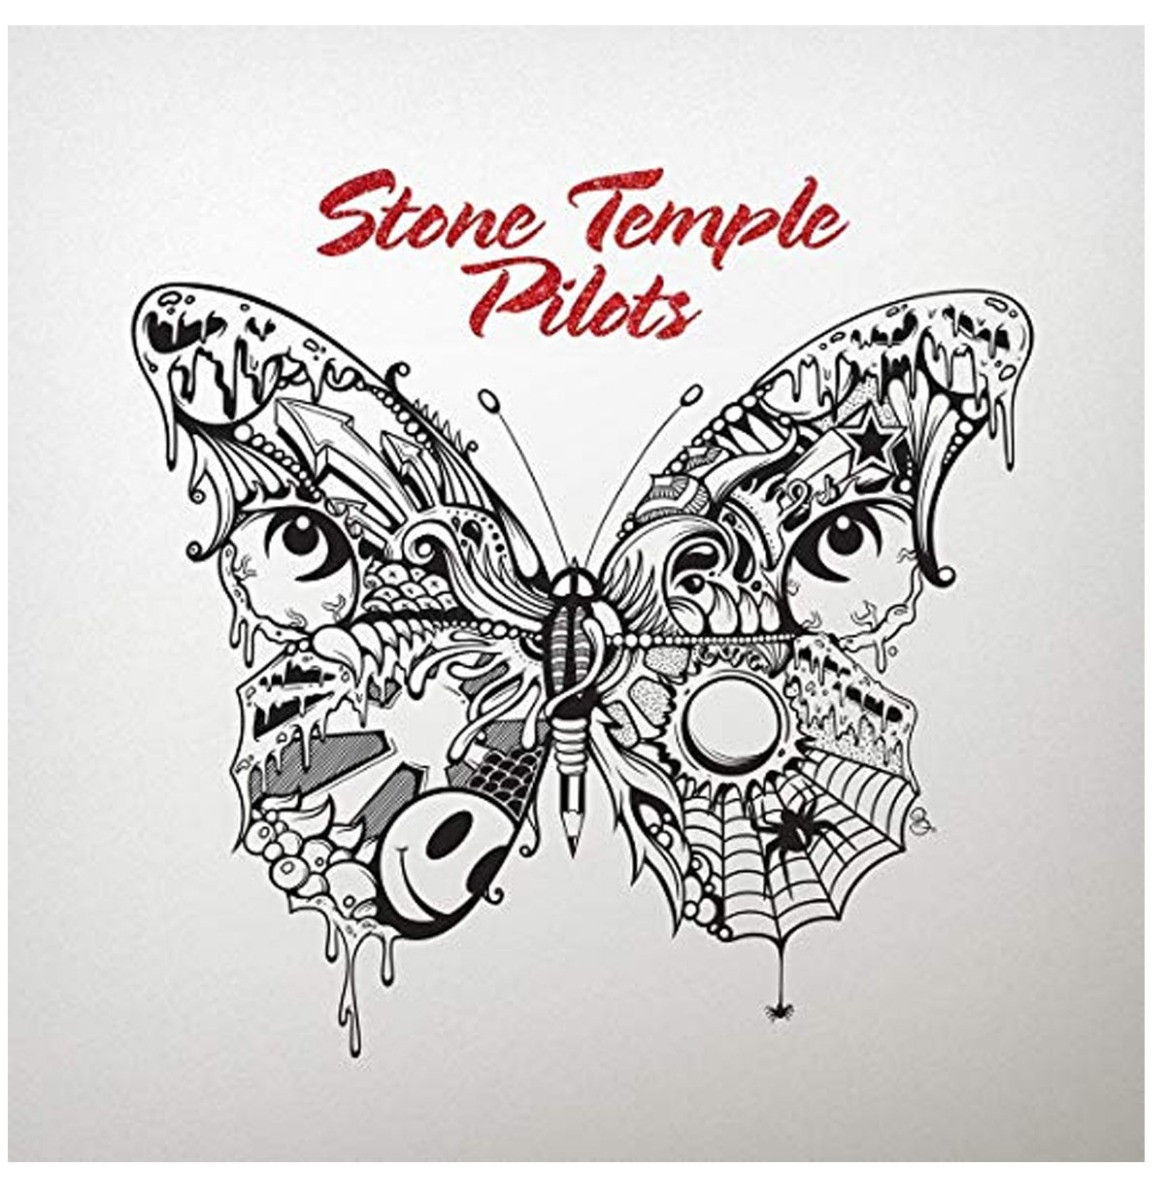 Stone Temple Pilots - Stone Temple Pilots LP